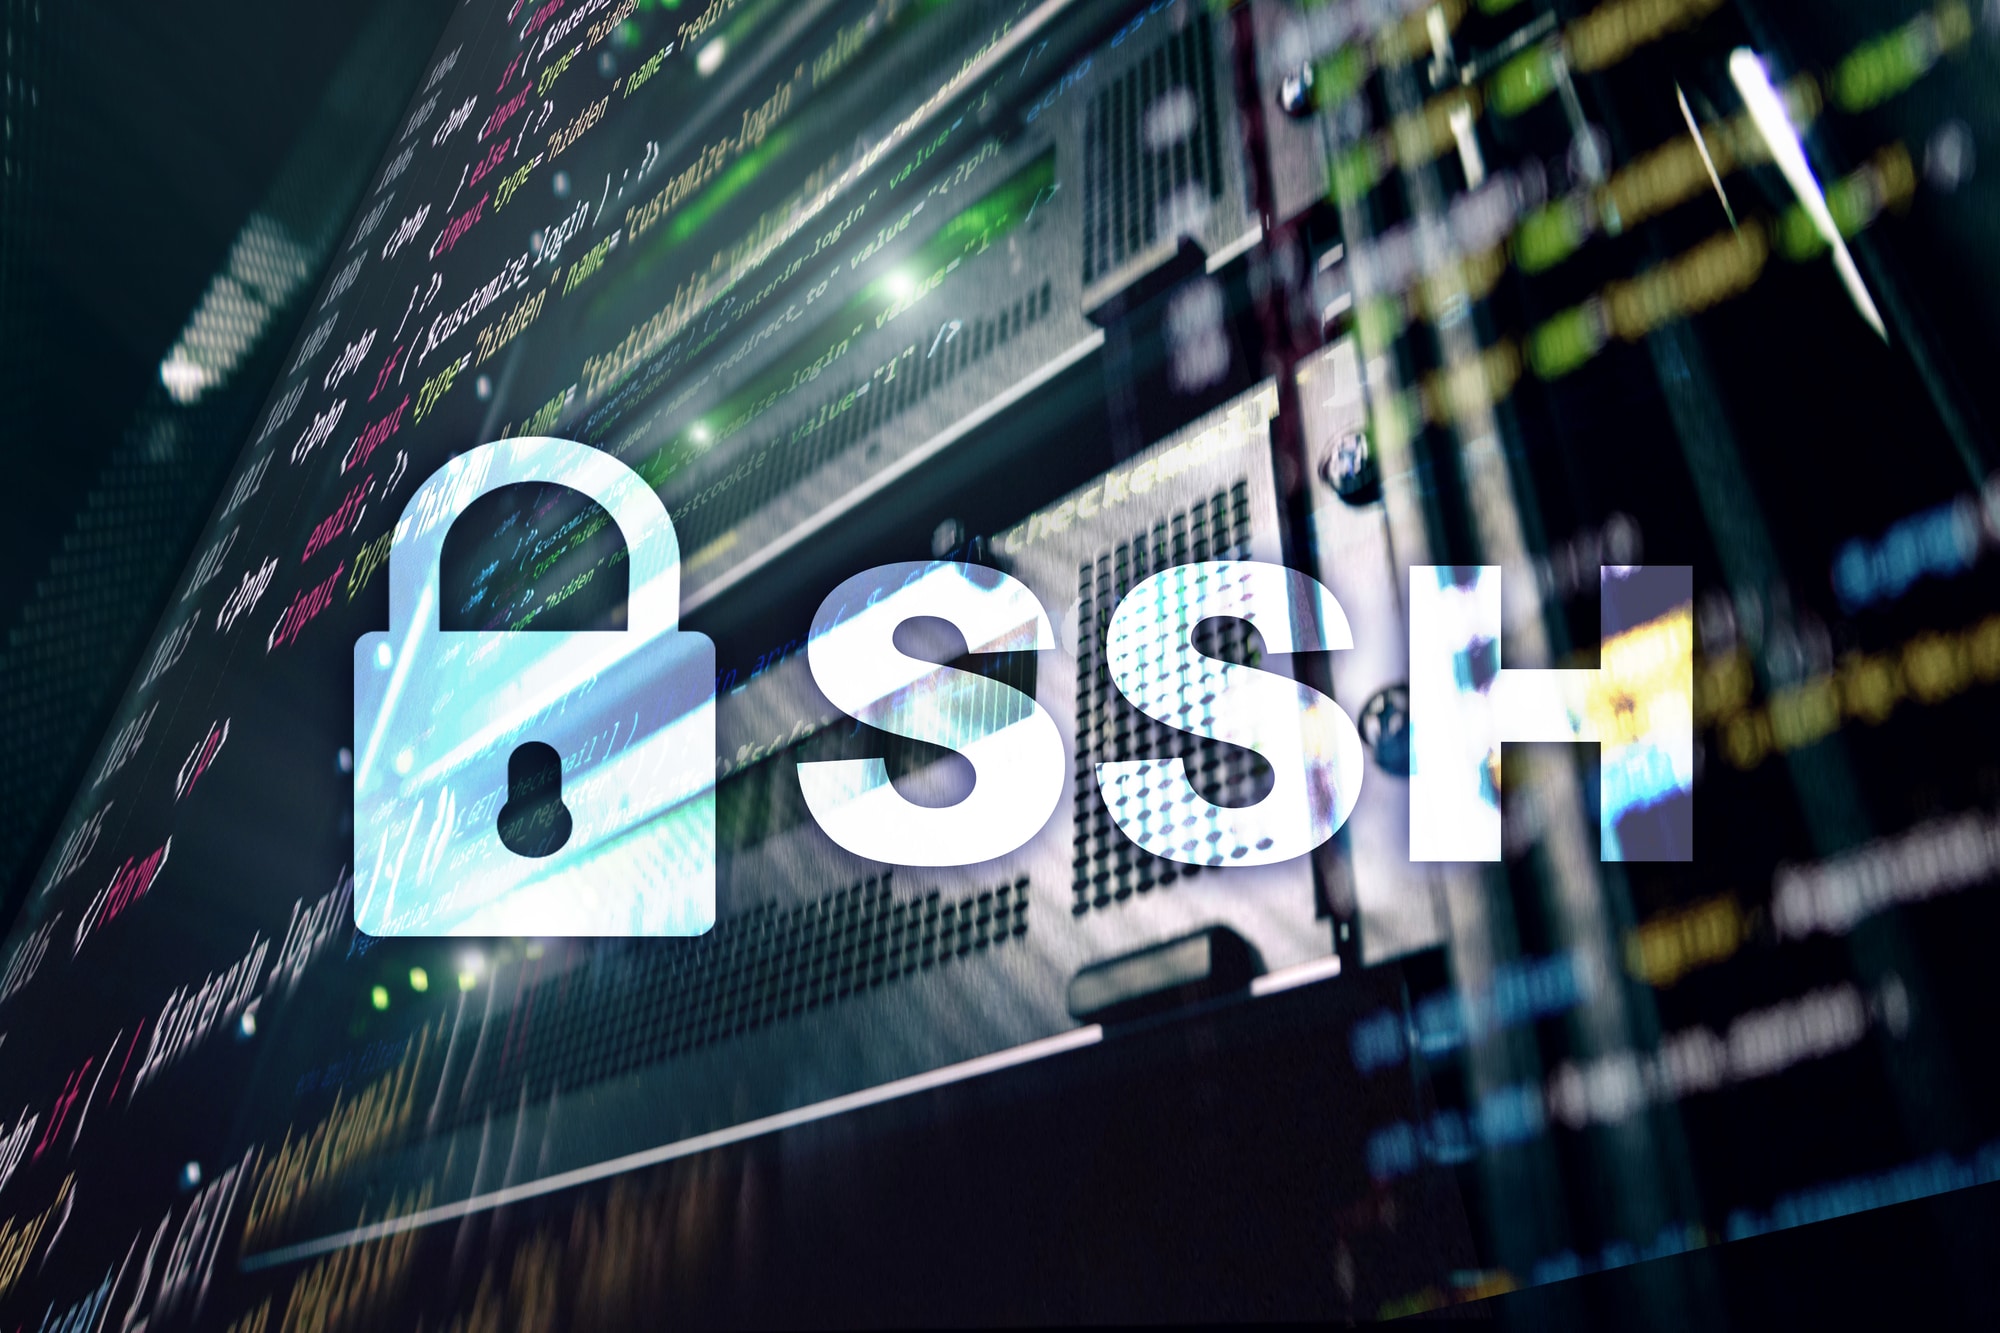 VPN: cómo puede funcionar SSH como VPN